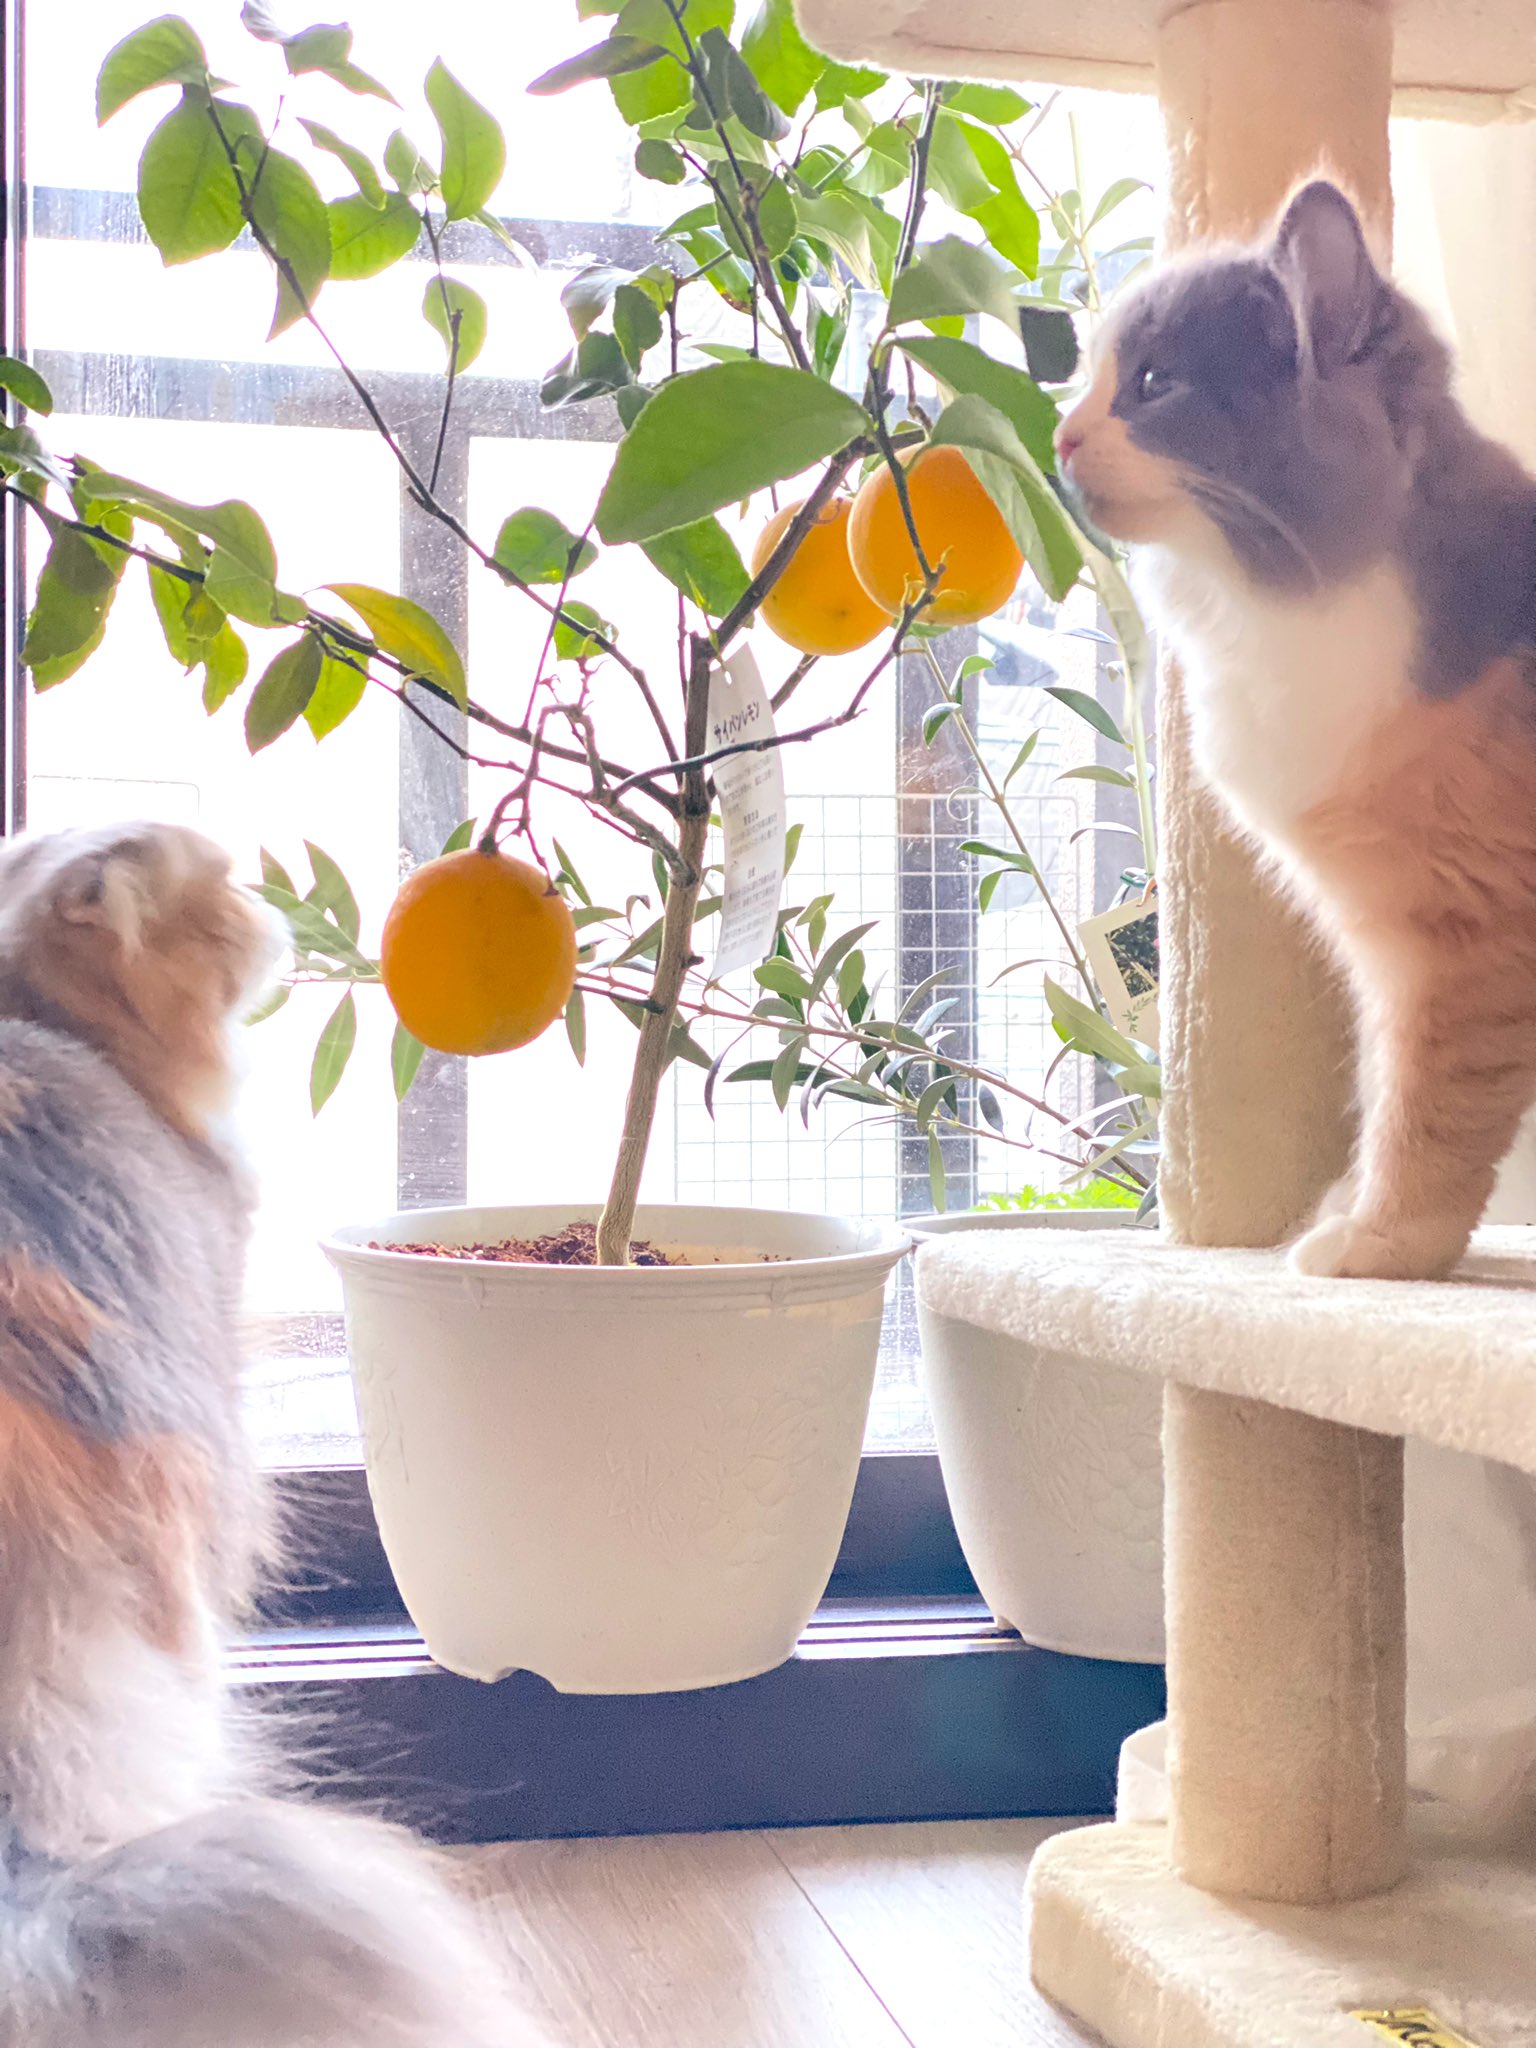 Negitoro Cat 外壁工事の為 植物は室内置きになるのでお片付けにゃ レモン 檸檬 れもん Catsontwitter T Co C2bieu61sn Twitter